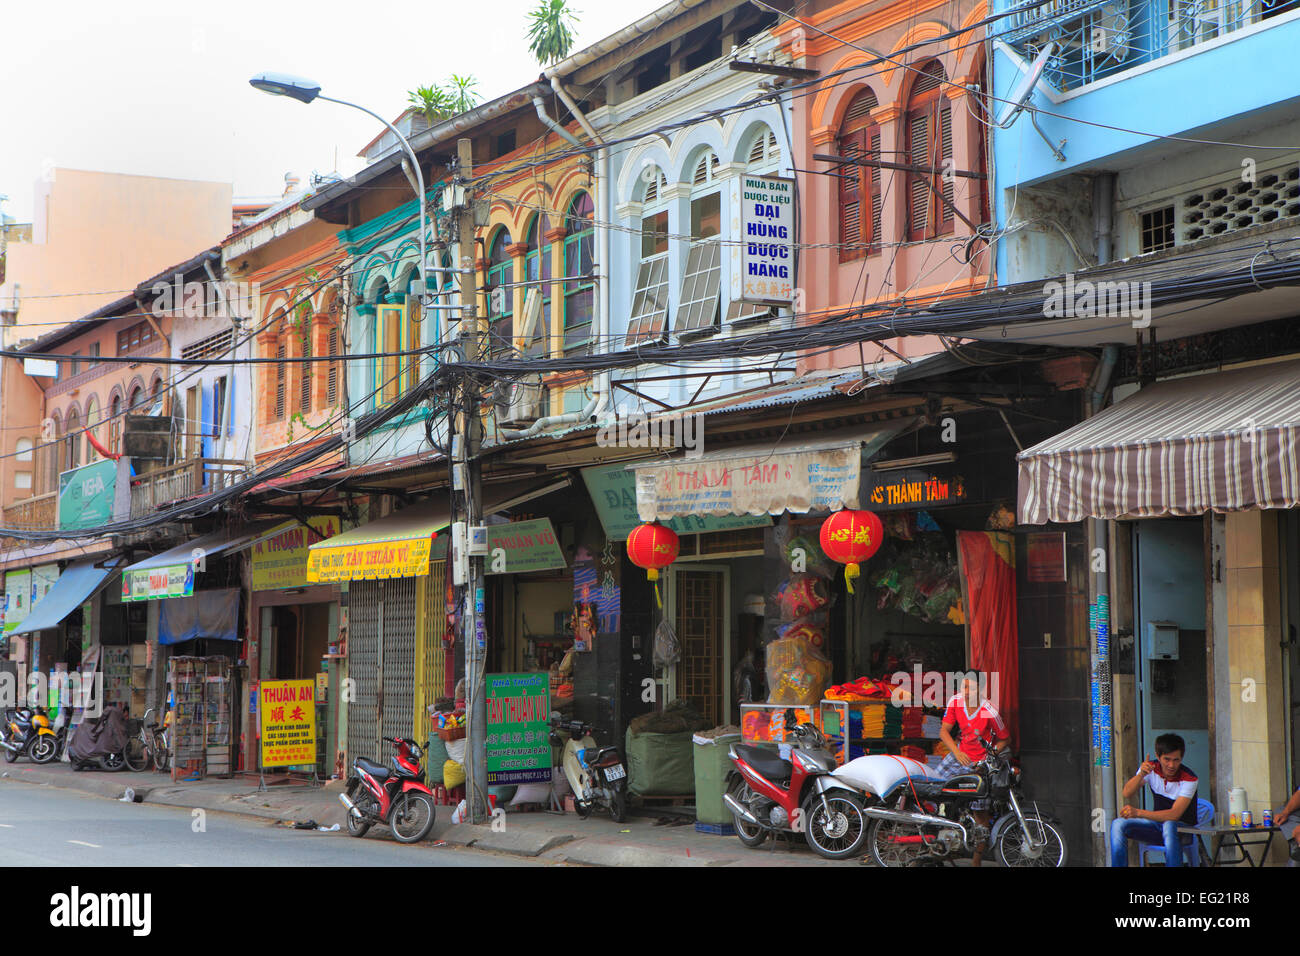 Street dans la vieille ville, Cholon, Ho Chi Minh Ville (Saigon), Vietnam Banque D'Images